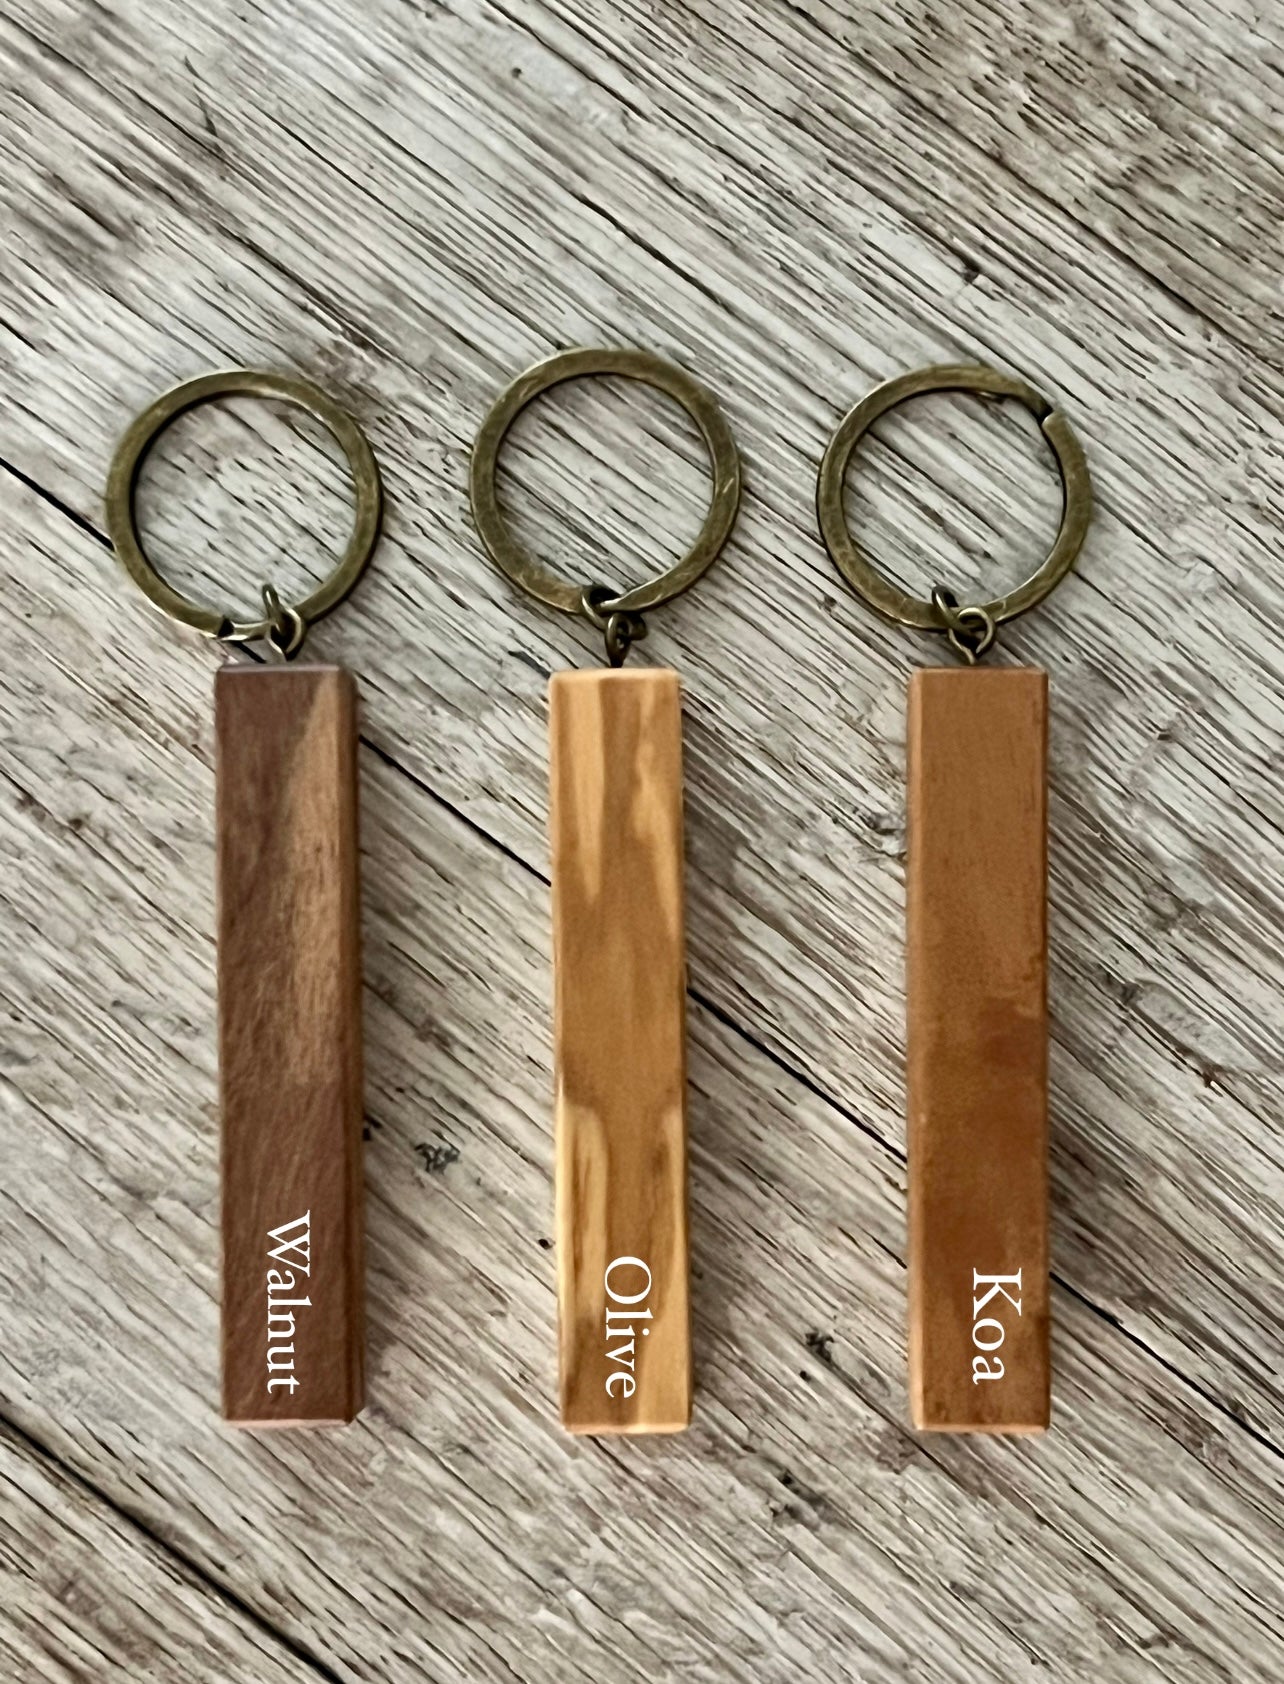 Wood Keychain Blank Personalized Wood Keychain Round Wood Keychain Blank  Luggage Tag Wood Glowforge Blanks 